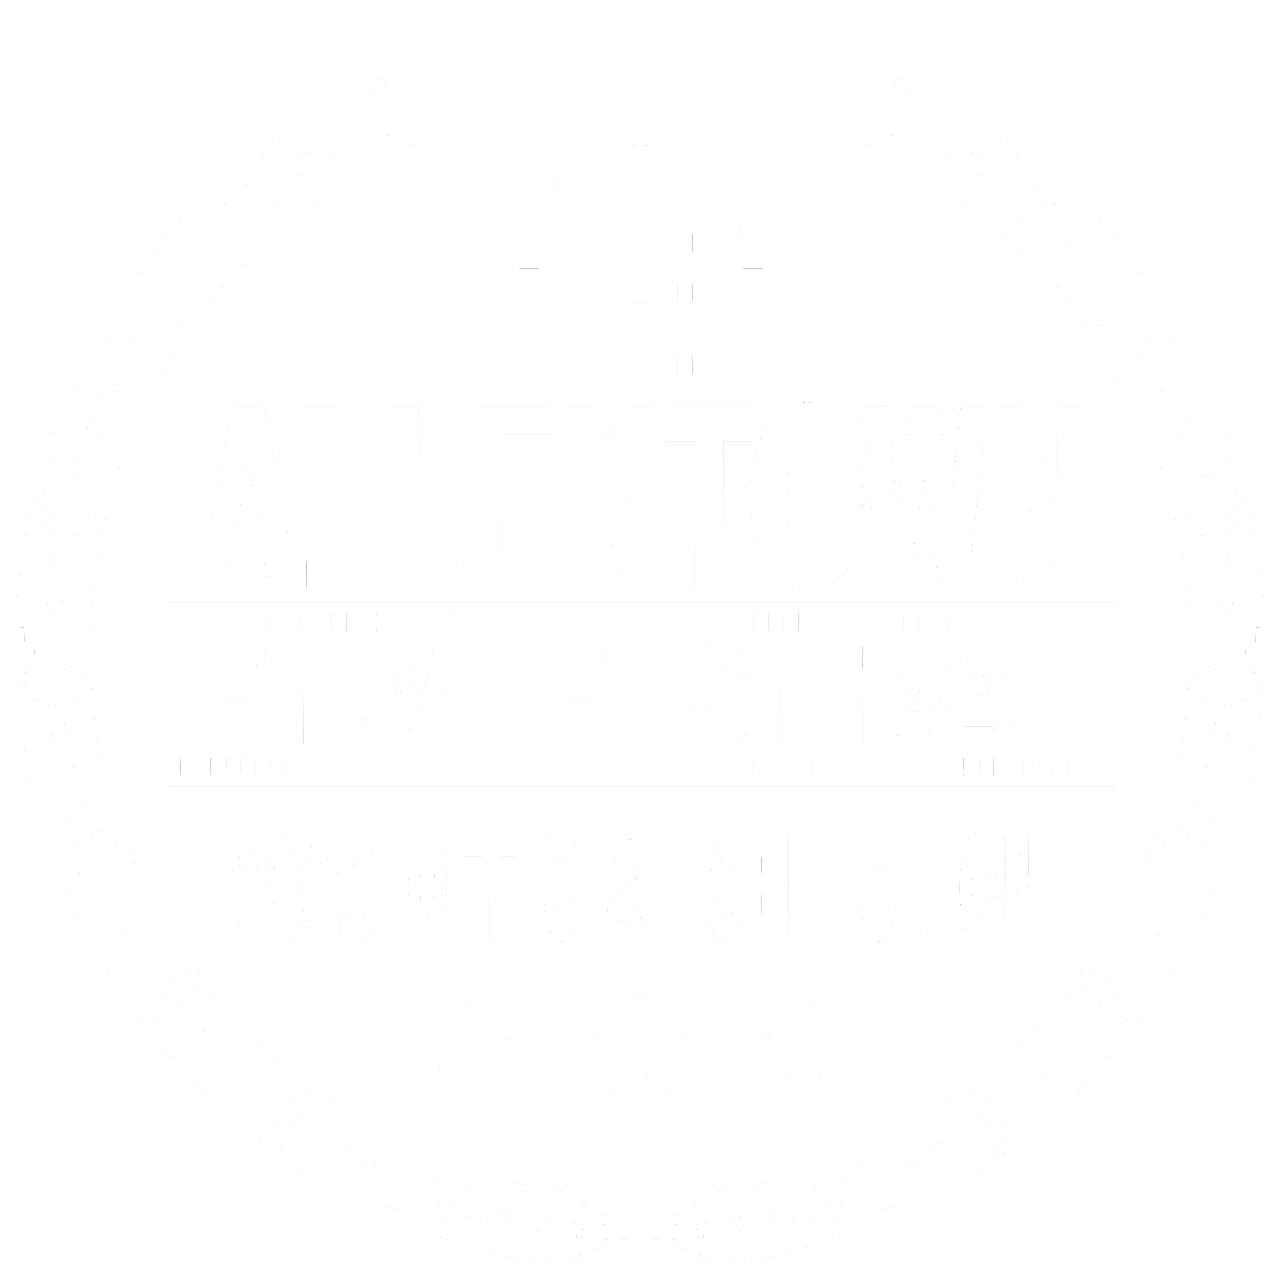 Allentown Film Fest 2023 OFFICIAL SELECTION LAURELS v2 2022 12.png